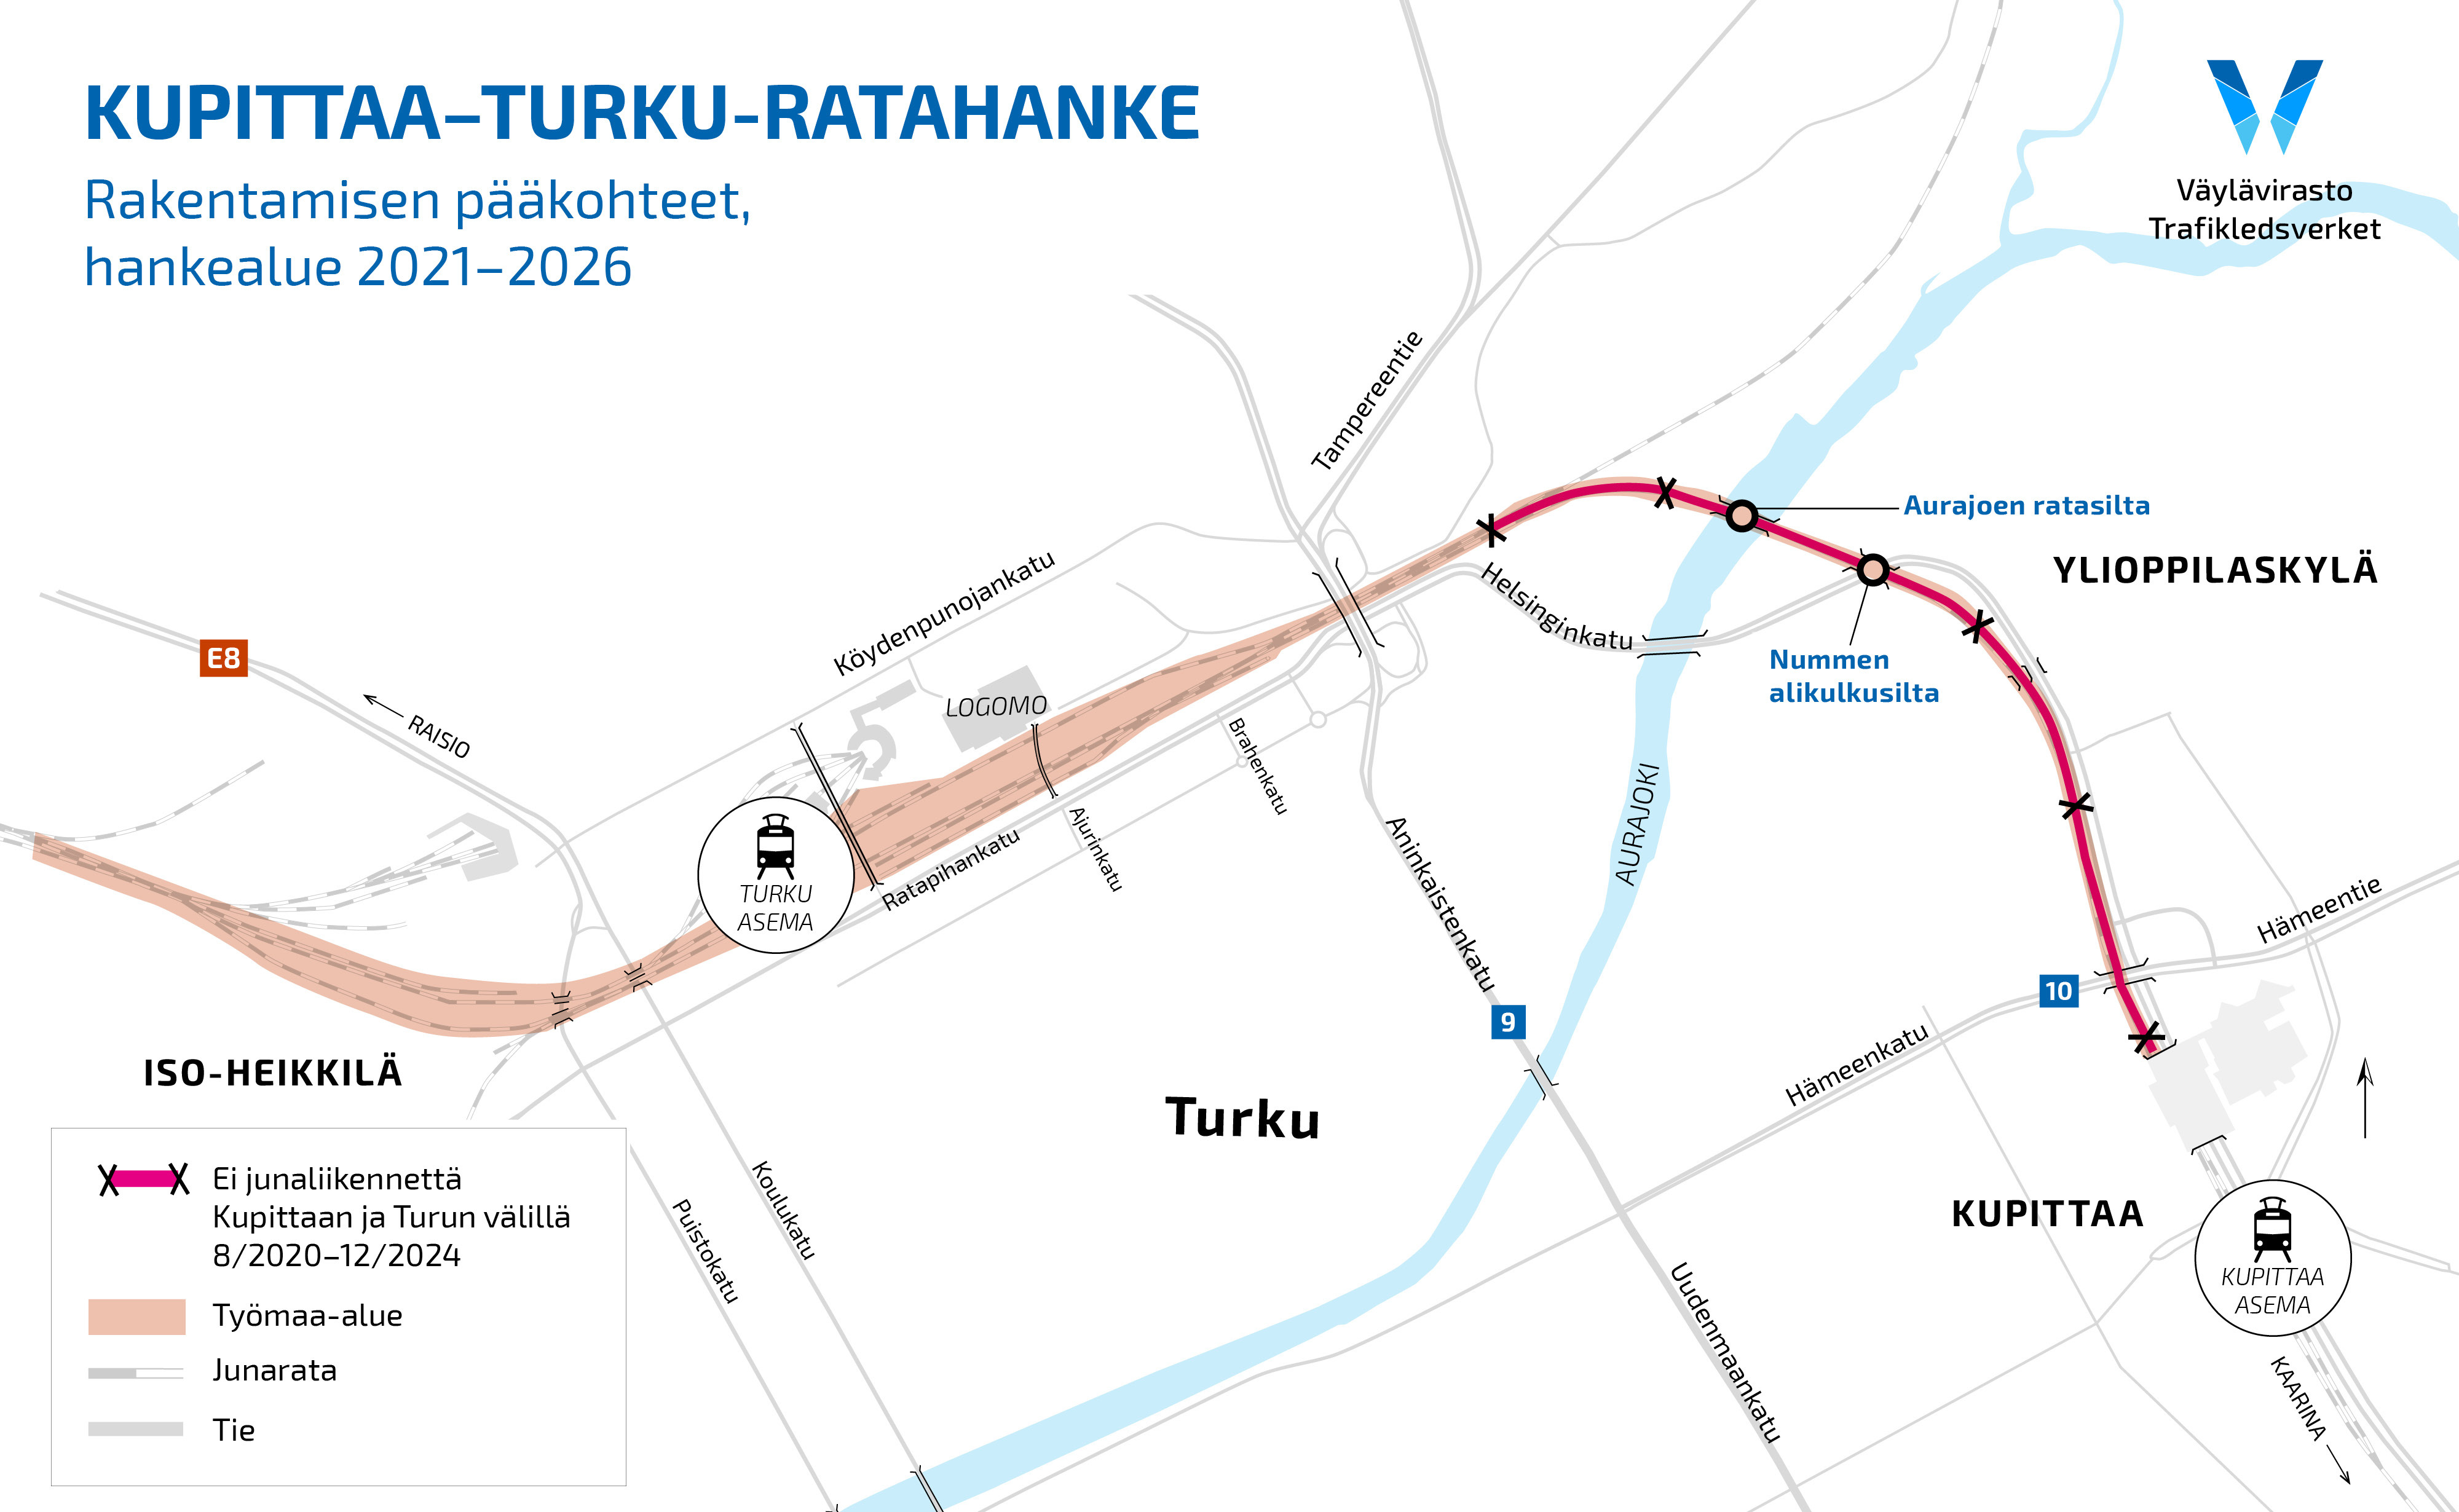 Kartta Kupittaa-Turku-ratahanke, rakentamisen pääkohdat, hankealue 2021-2026